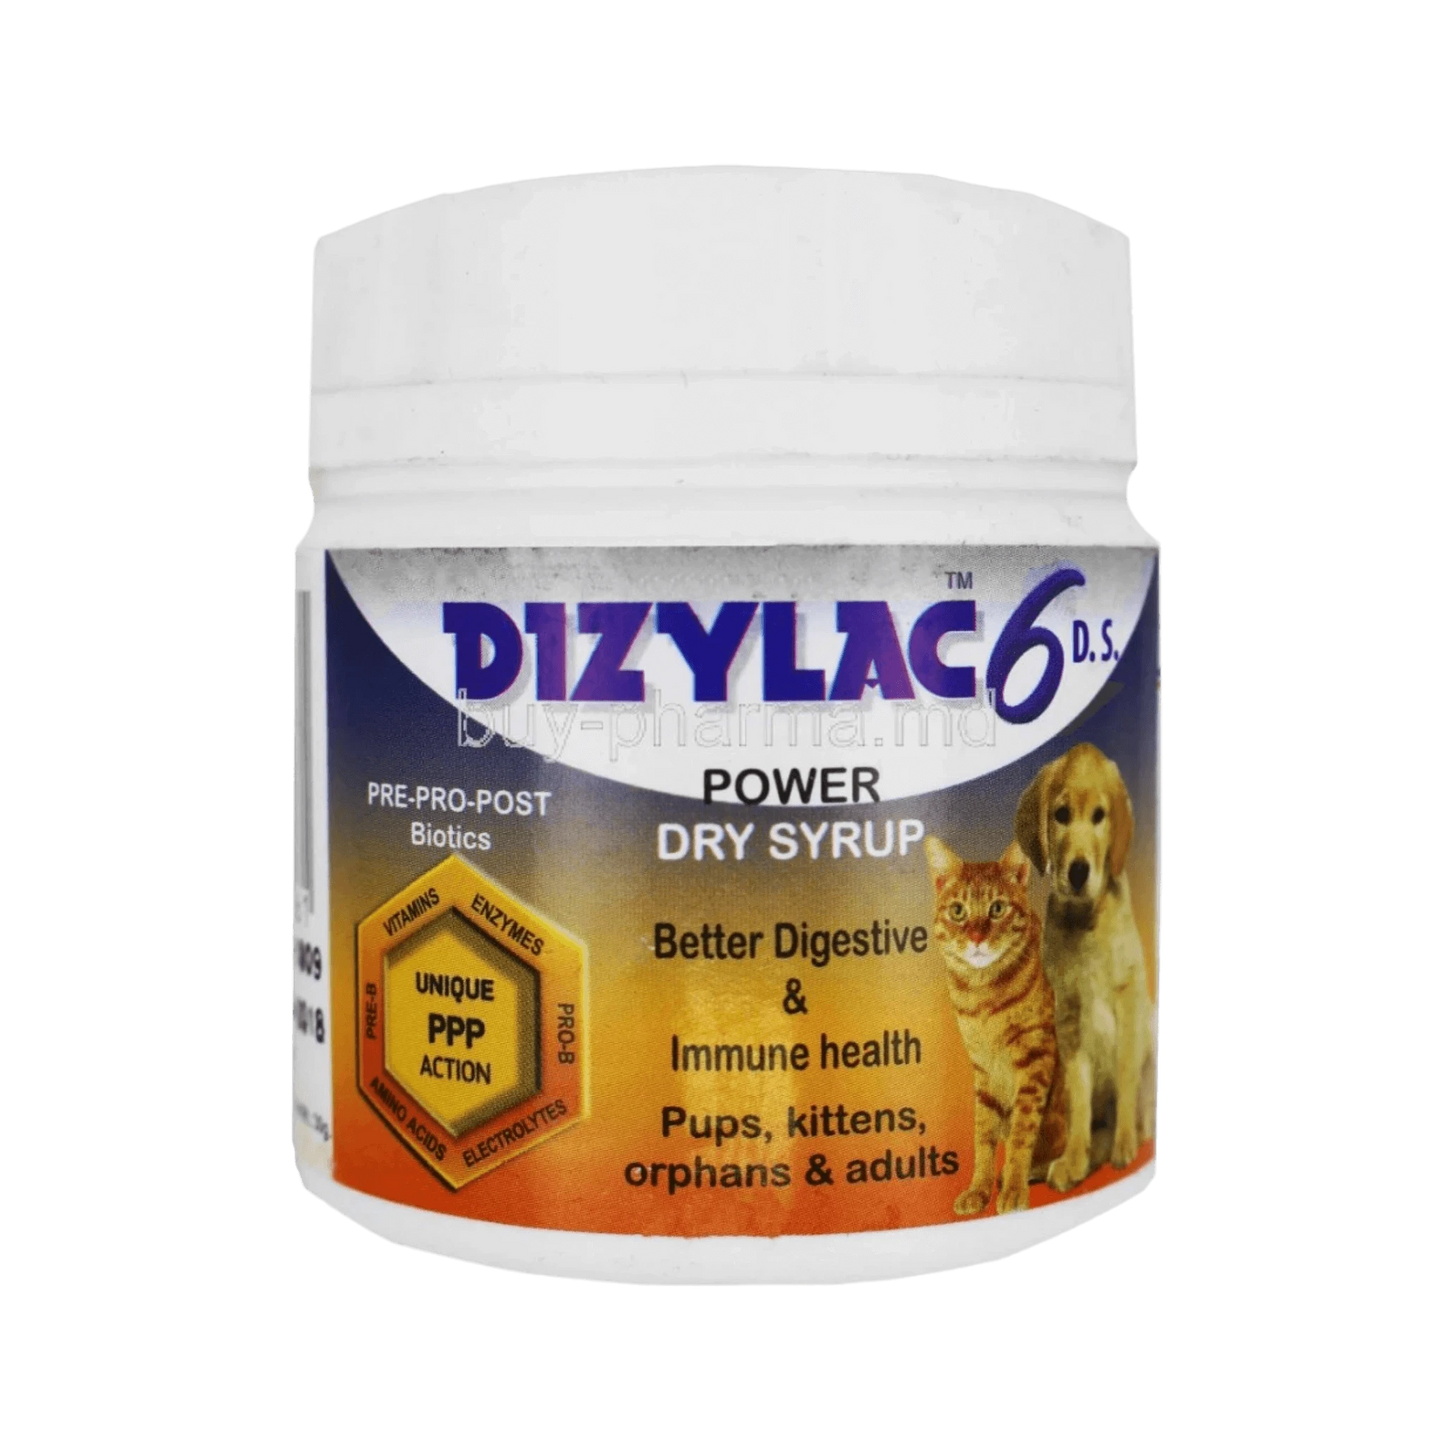 DIZYLAC 6 POW